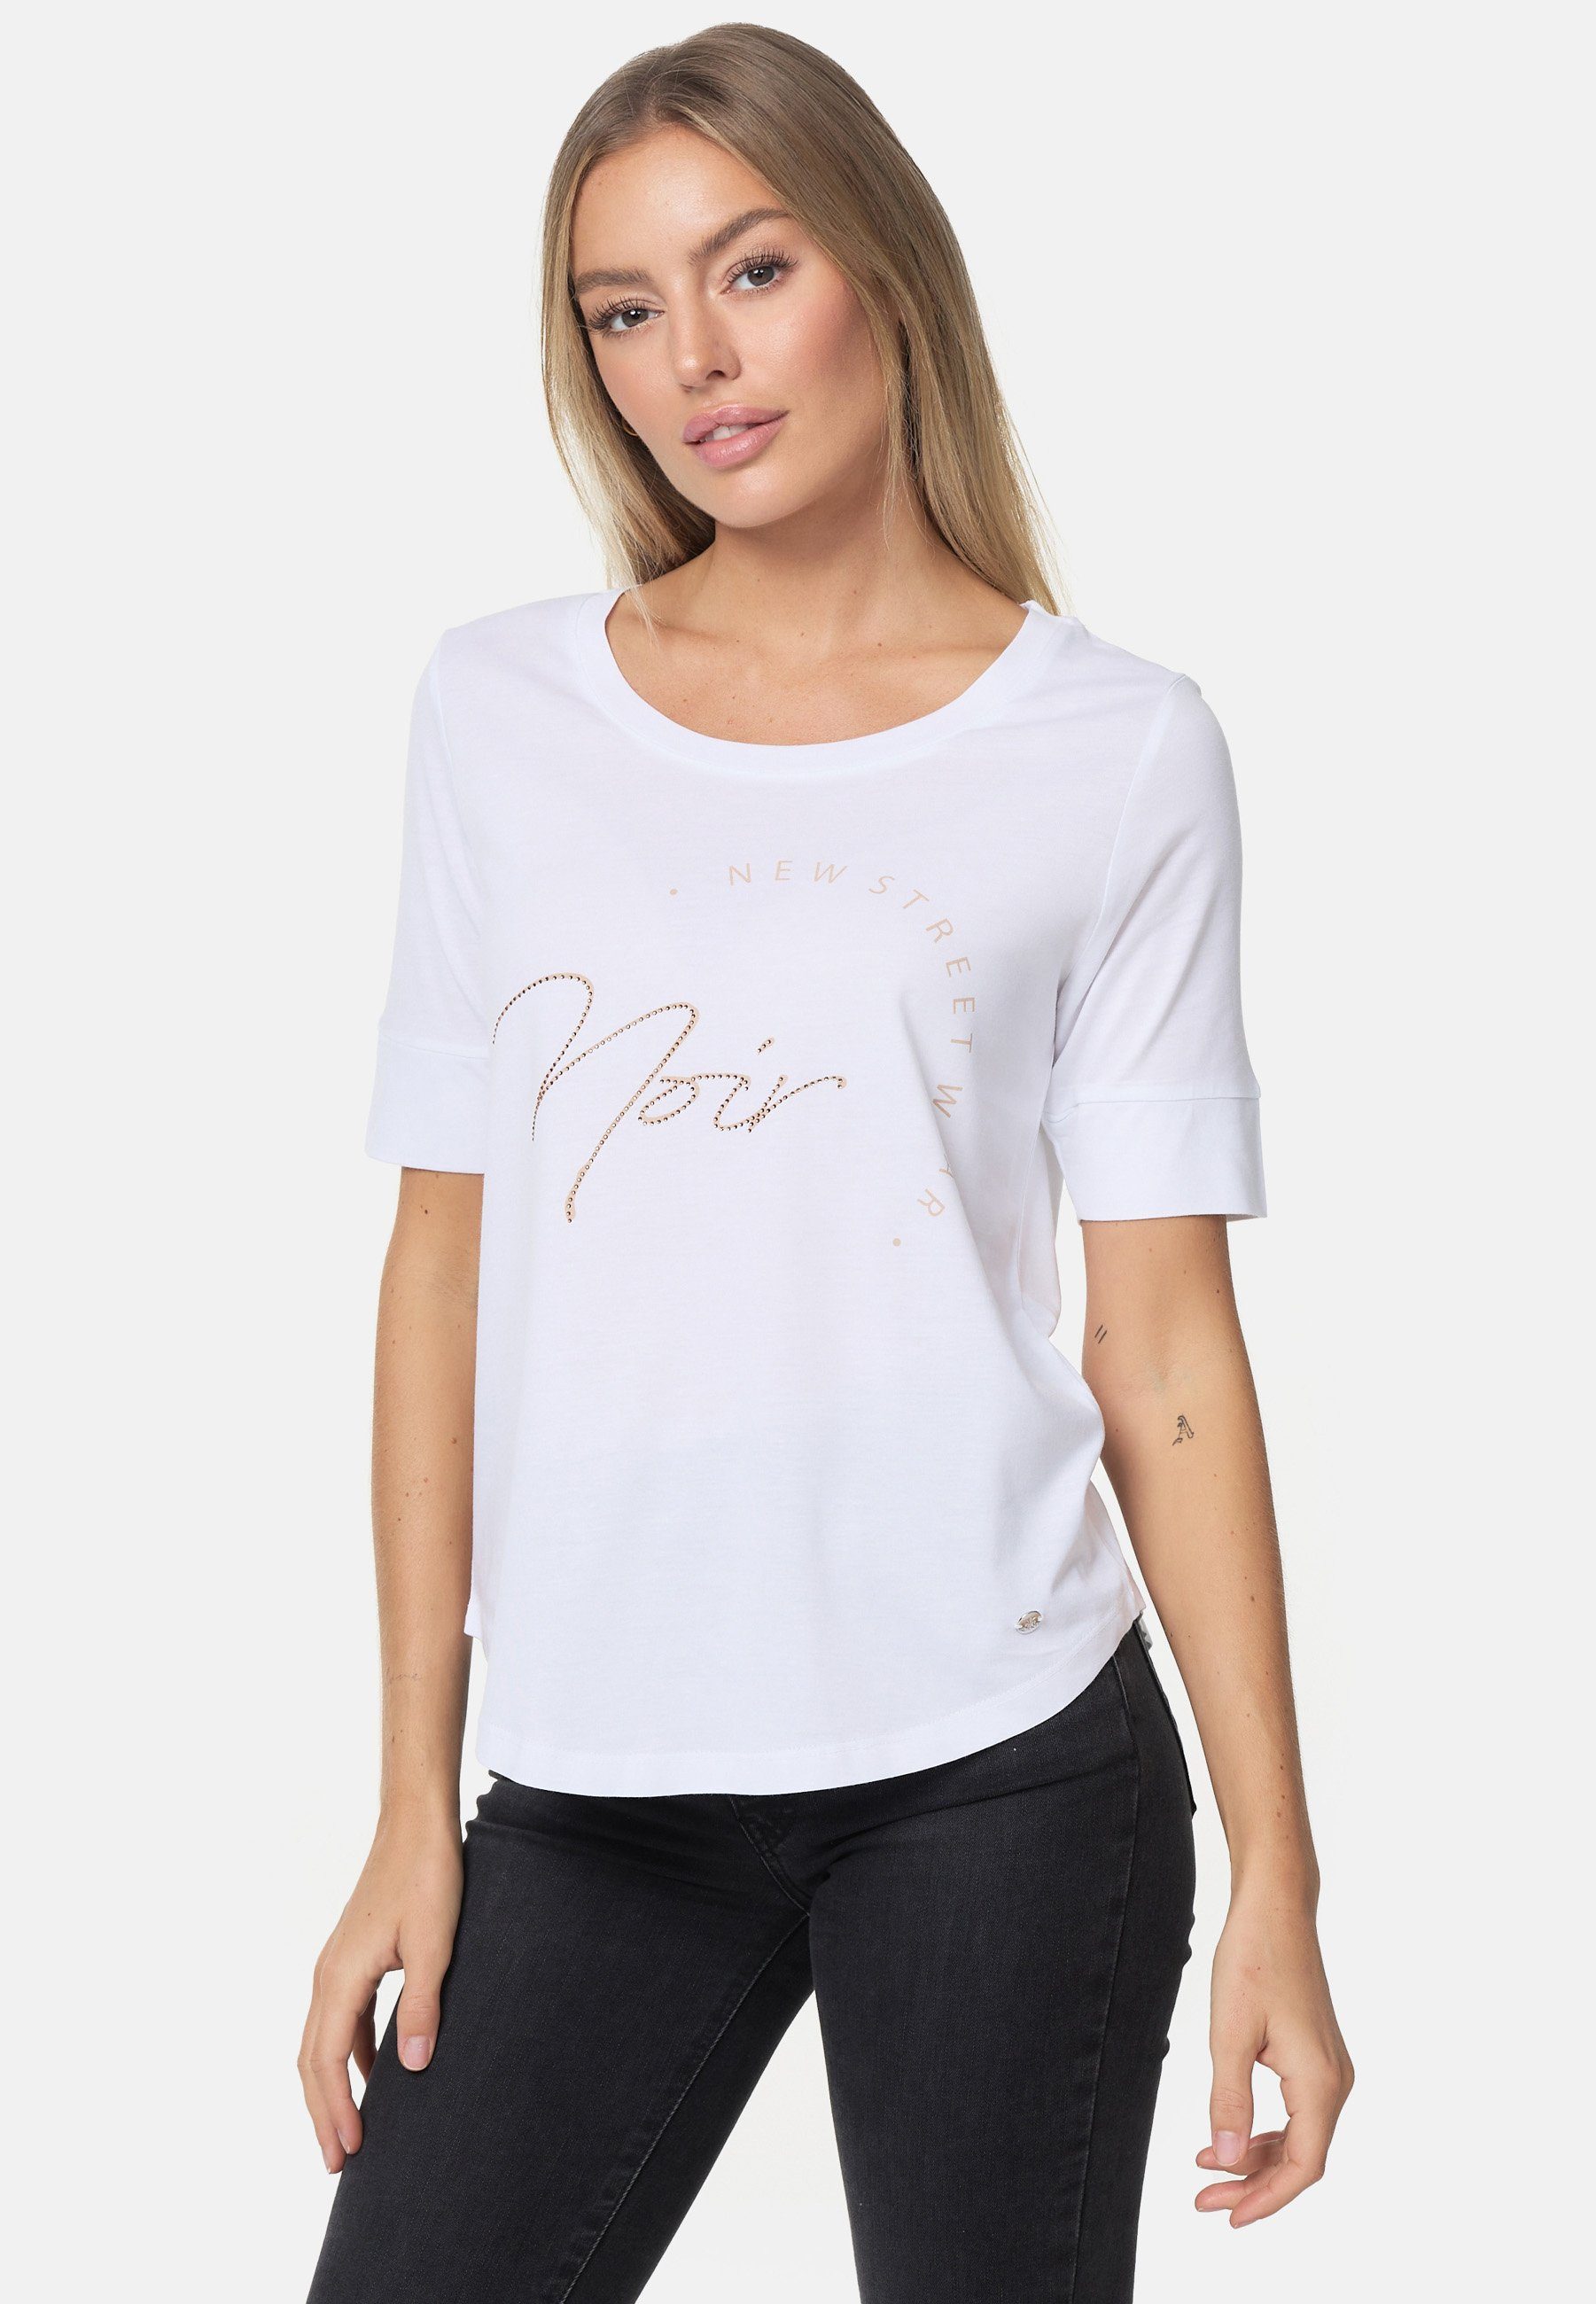 Decay T-Shirt mit schimmerndem Schriftzug weiß-beige